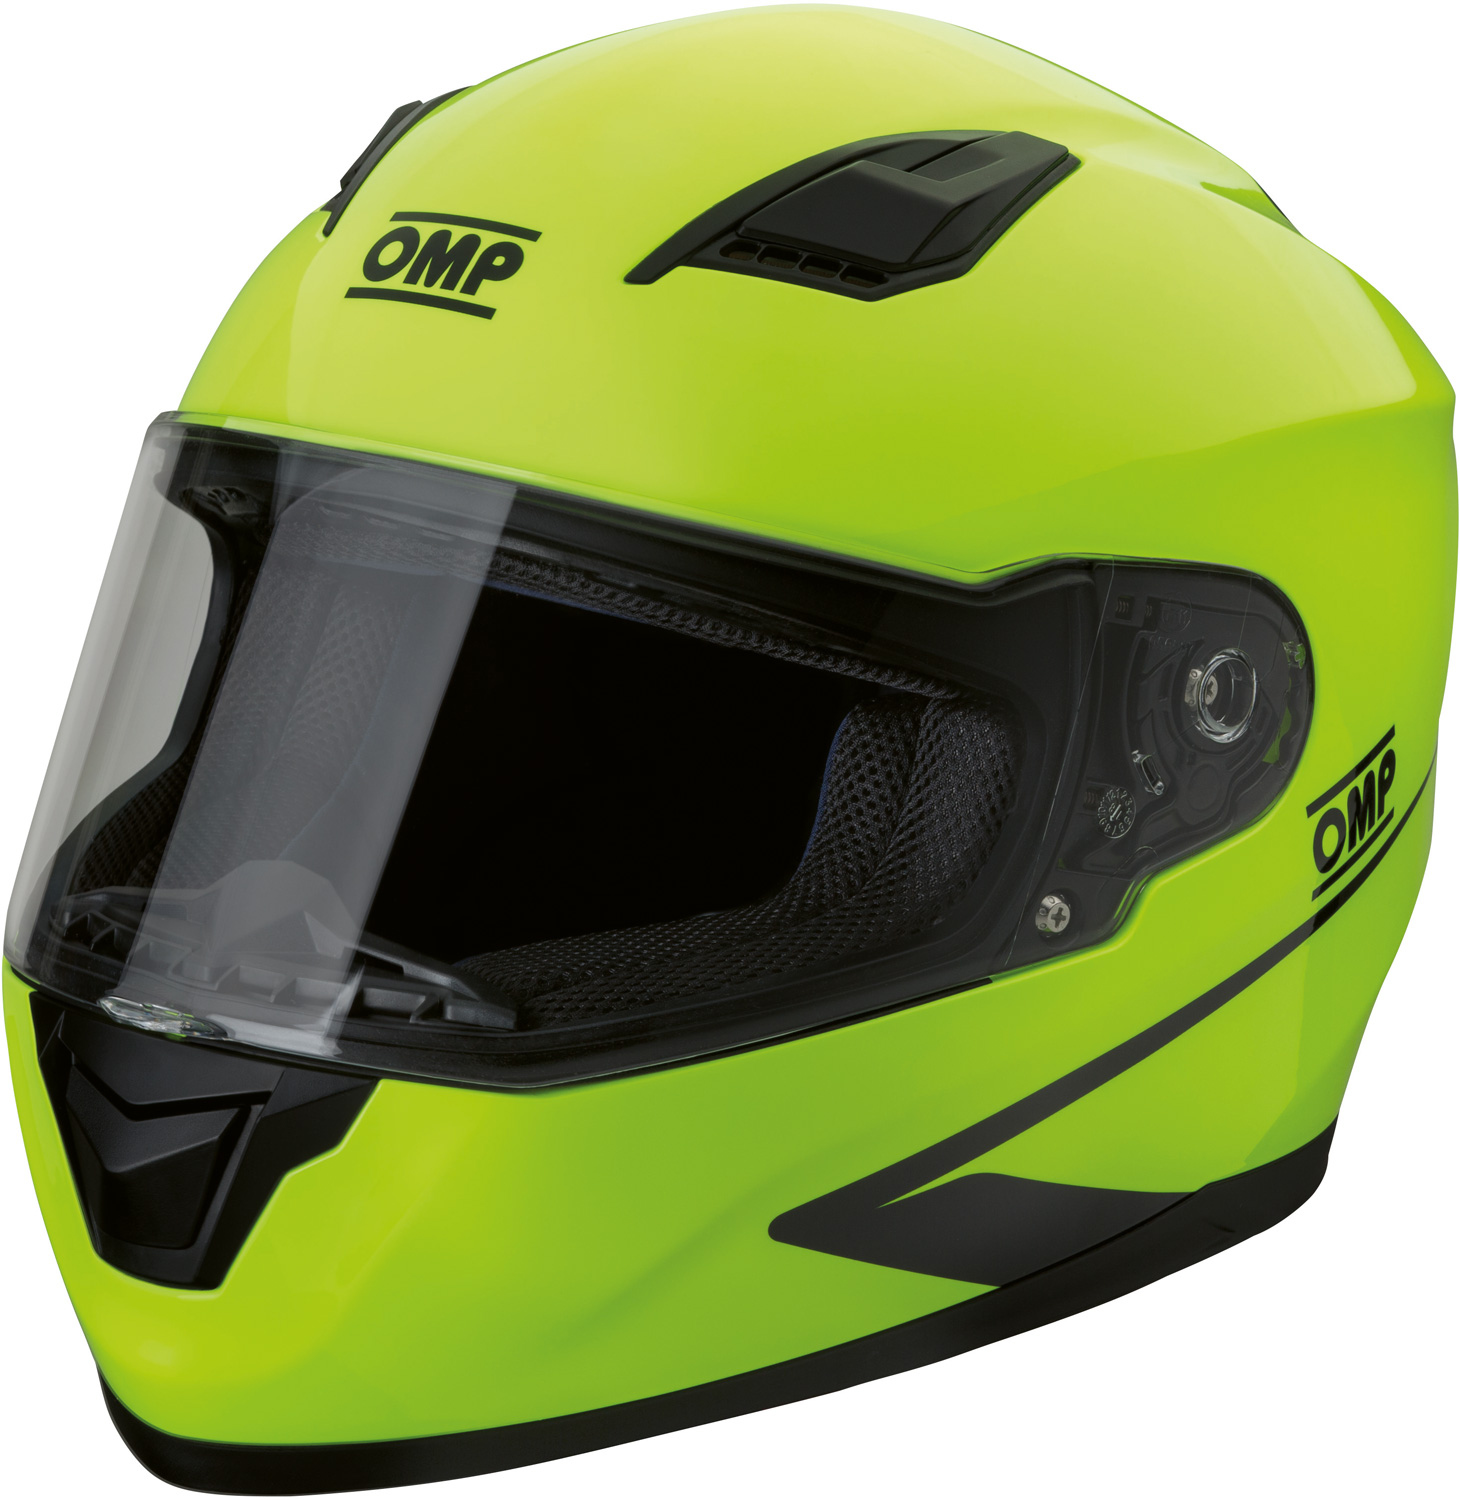 Шлем закрытый OMP CIRCUIT EVO для картинга желтый (ECE 22.05)